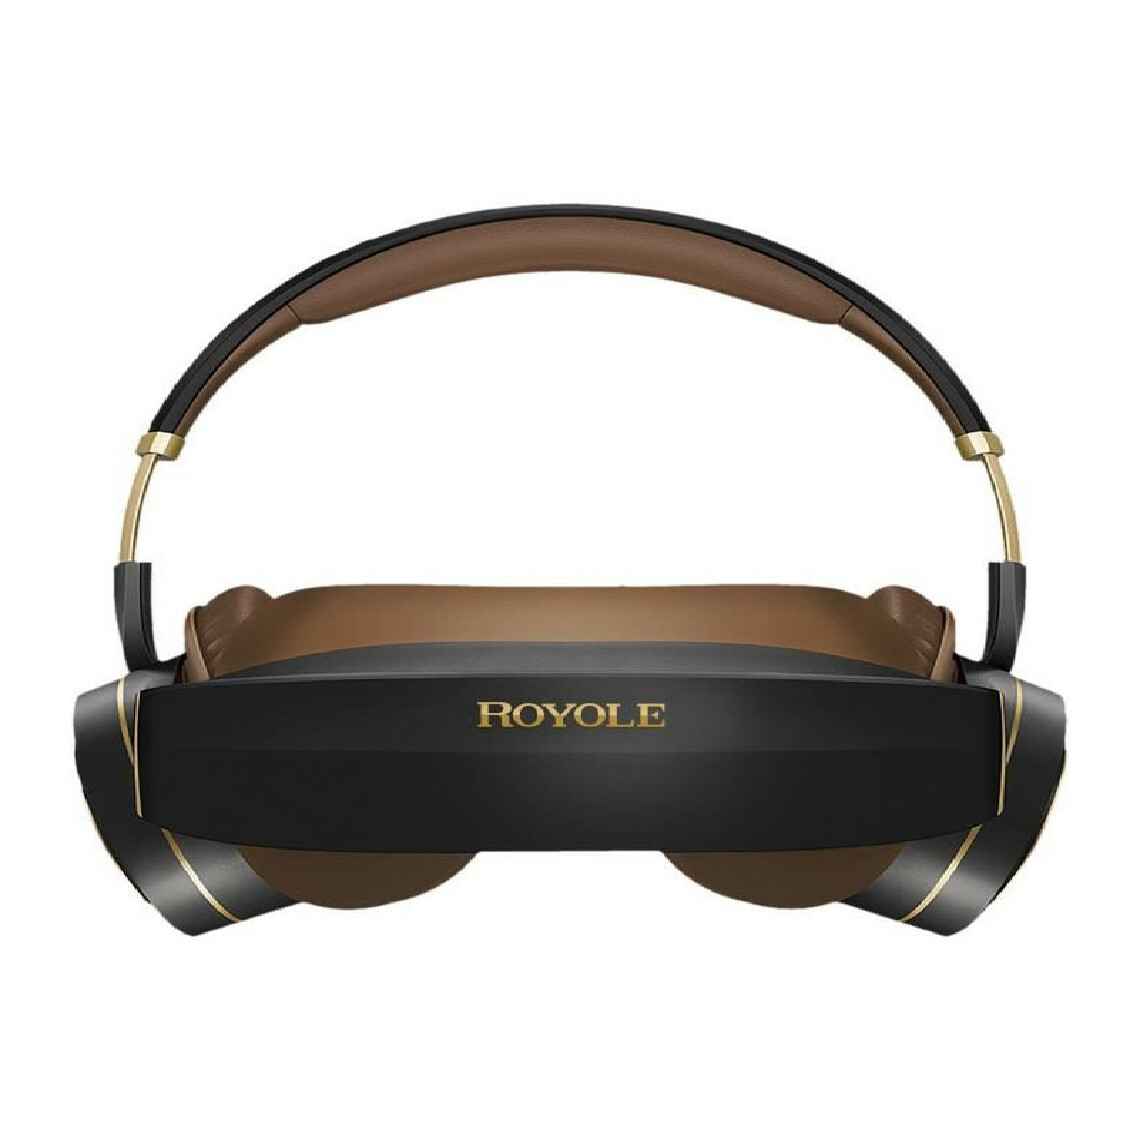 Royole - ROYOLE Casque de vidéo 3D et réalité virtuelle MOON - AMOLED x2 - 60Hz - RAM 32Go - Champ de vision 53° - Noir - Casques de réalité virtuelle